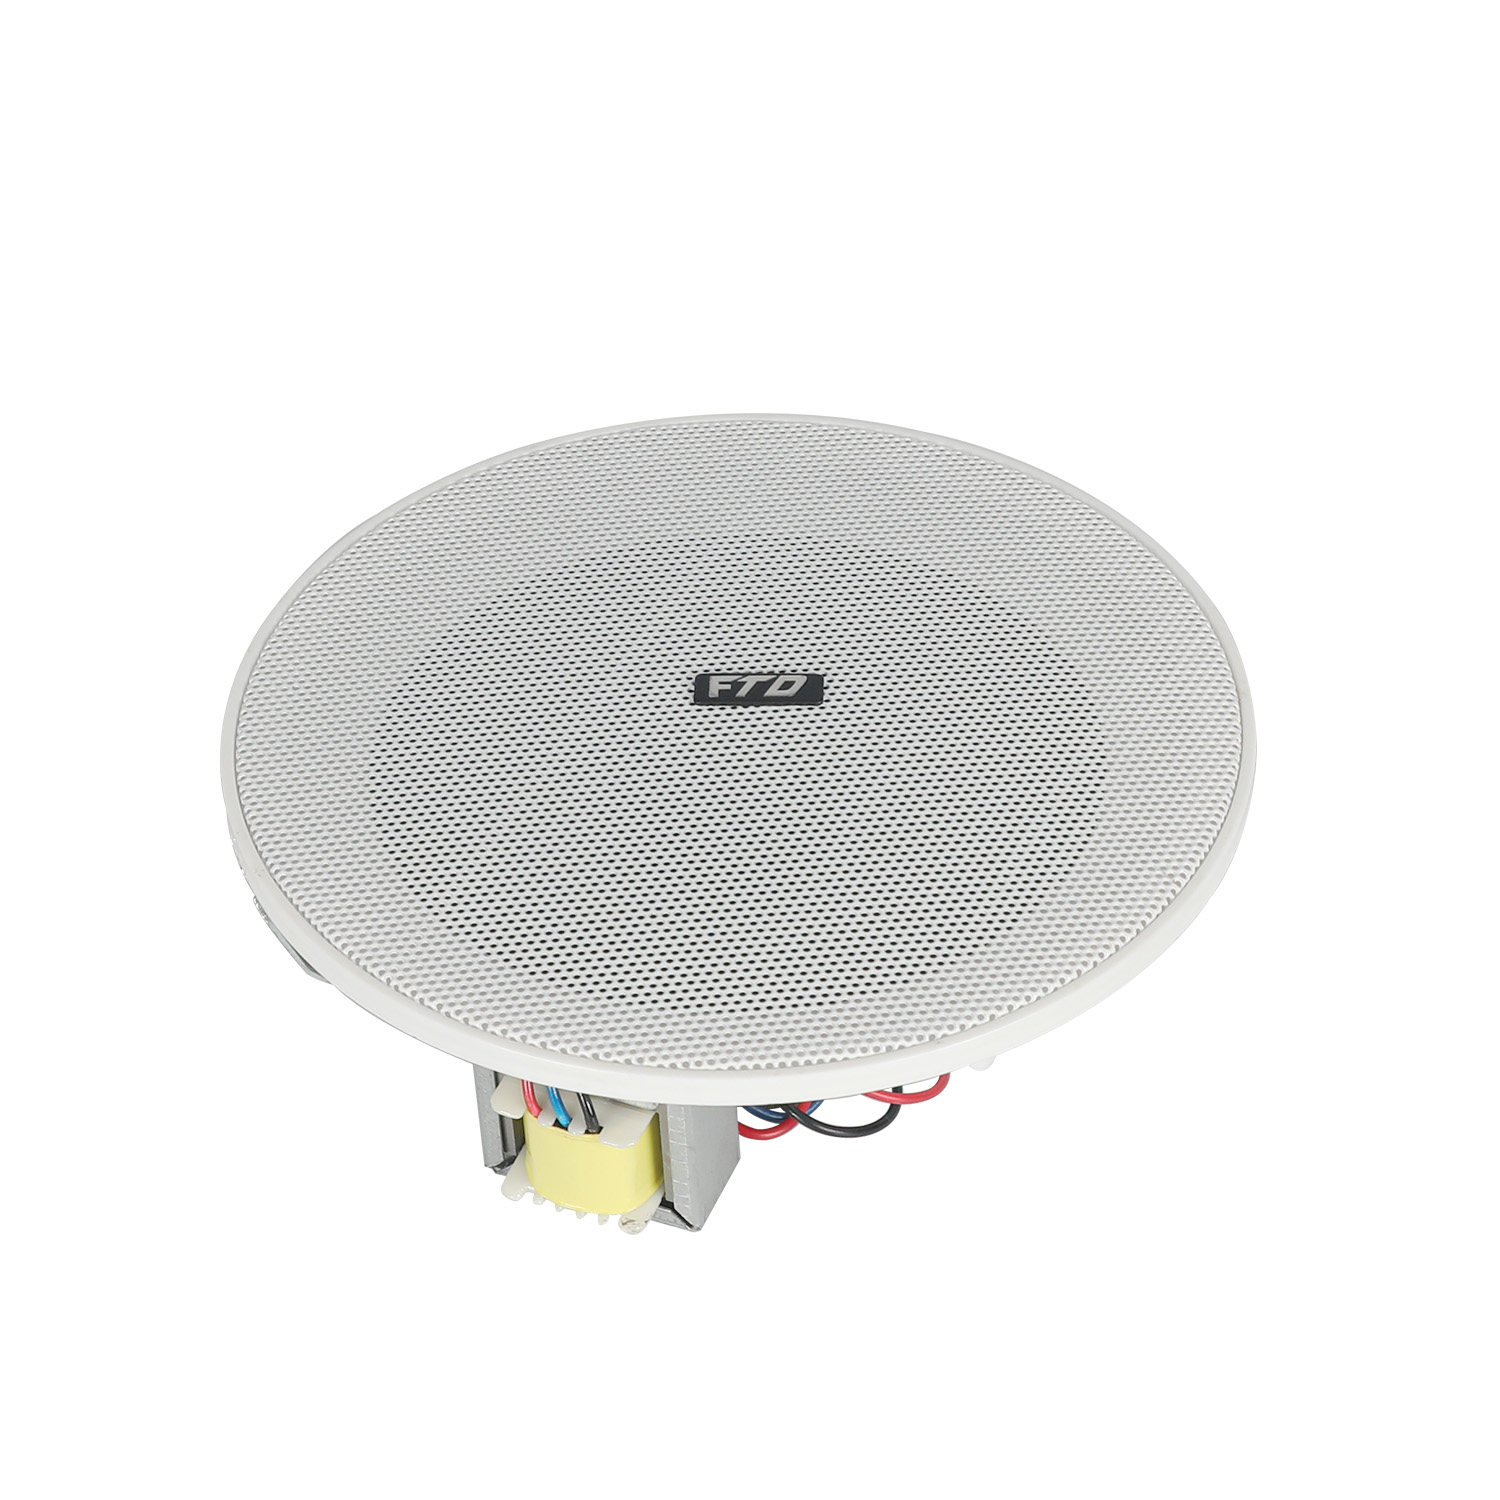 FCS-706N 6.5 inch Frameless Ceiling Speaker